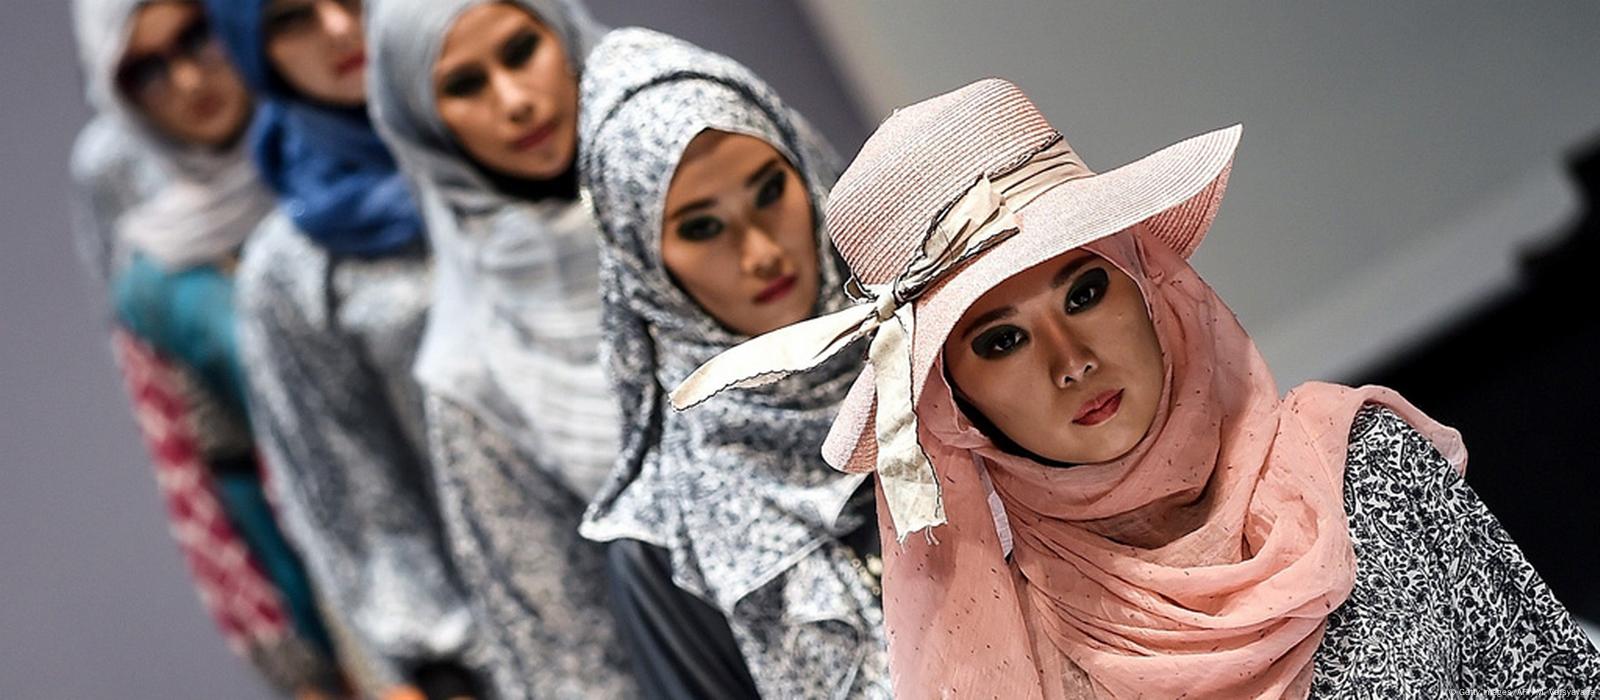 Estilistas descobrem a moda islâmica – DW